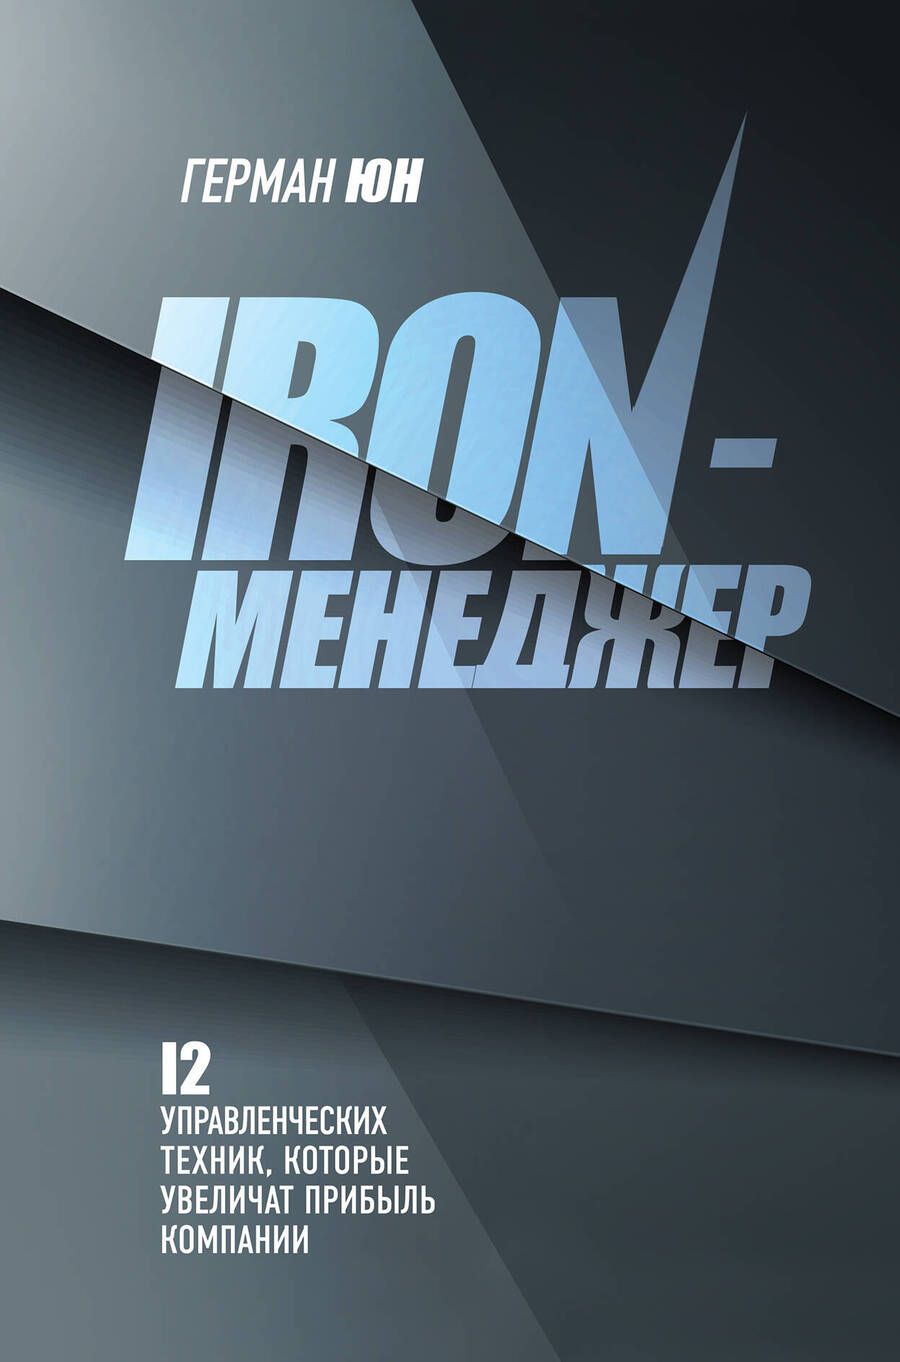 Обложка книги "Юн: Iron-менеджер"